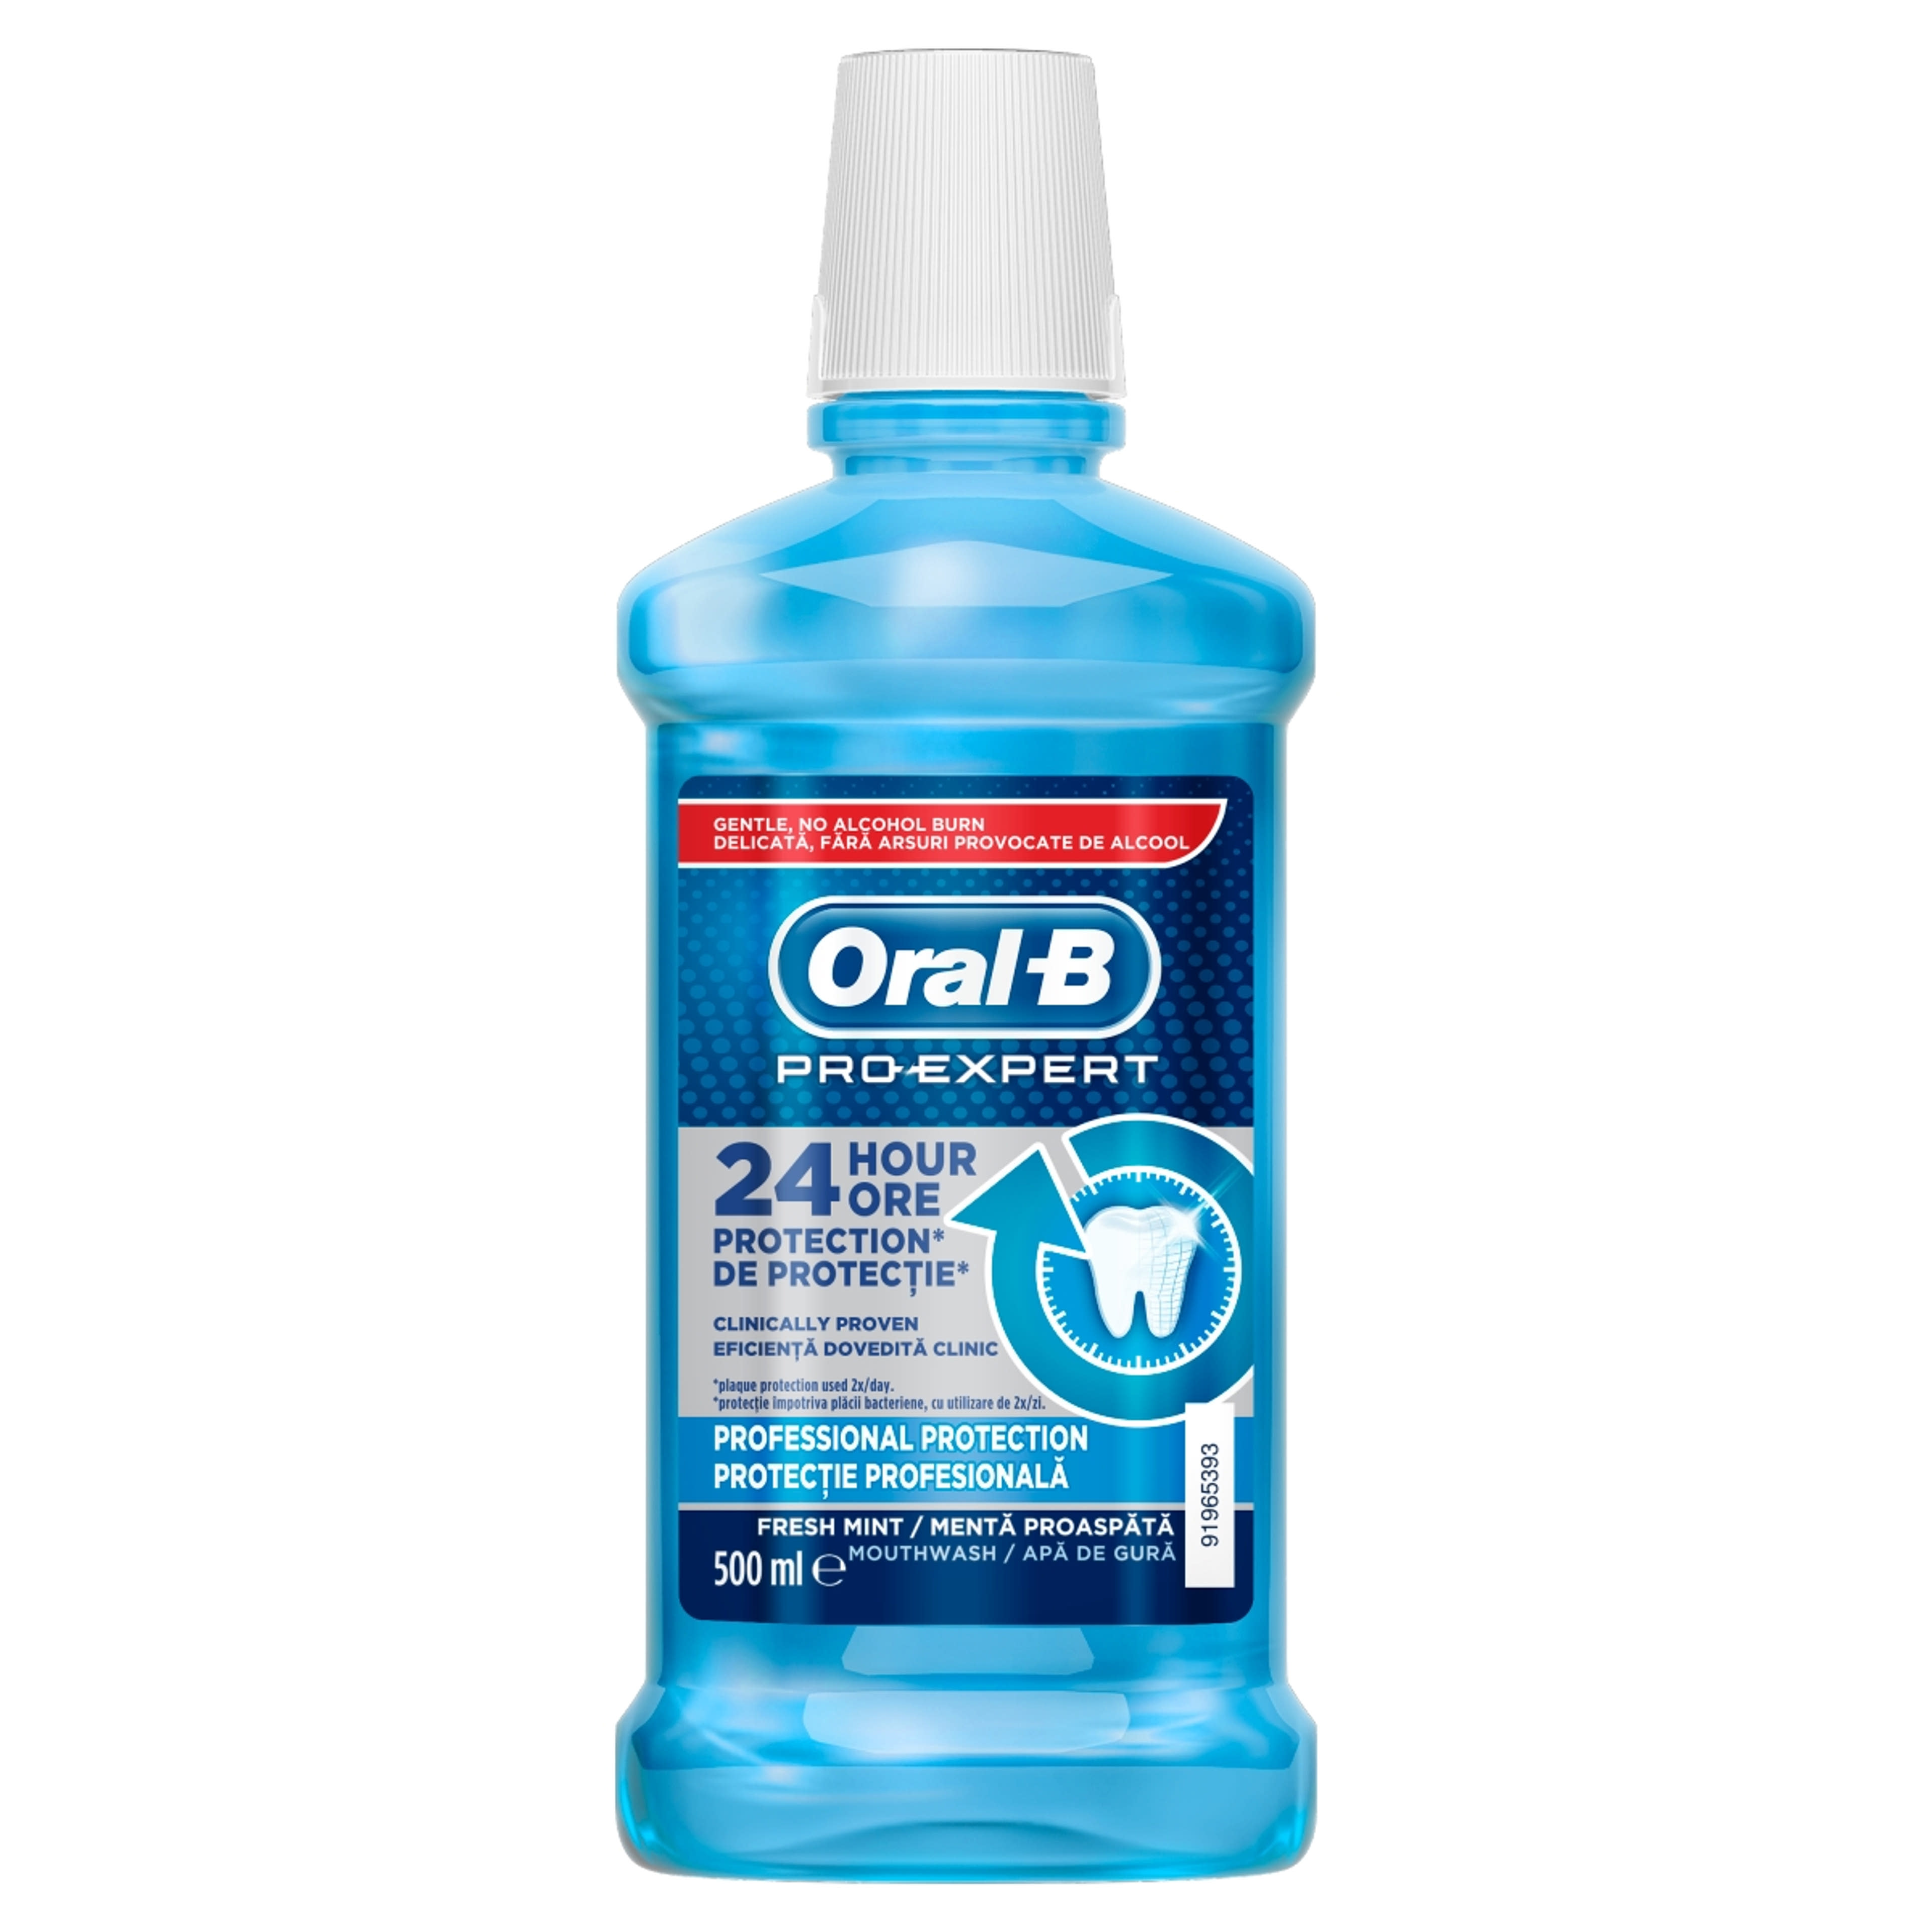 Oral-B Pro-Expert Professional Protection szájvíz - 500 ml-1